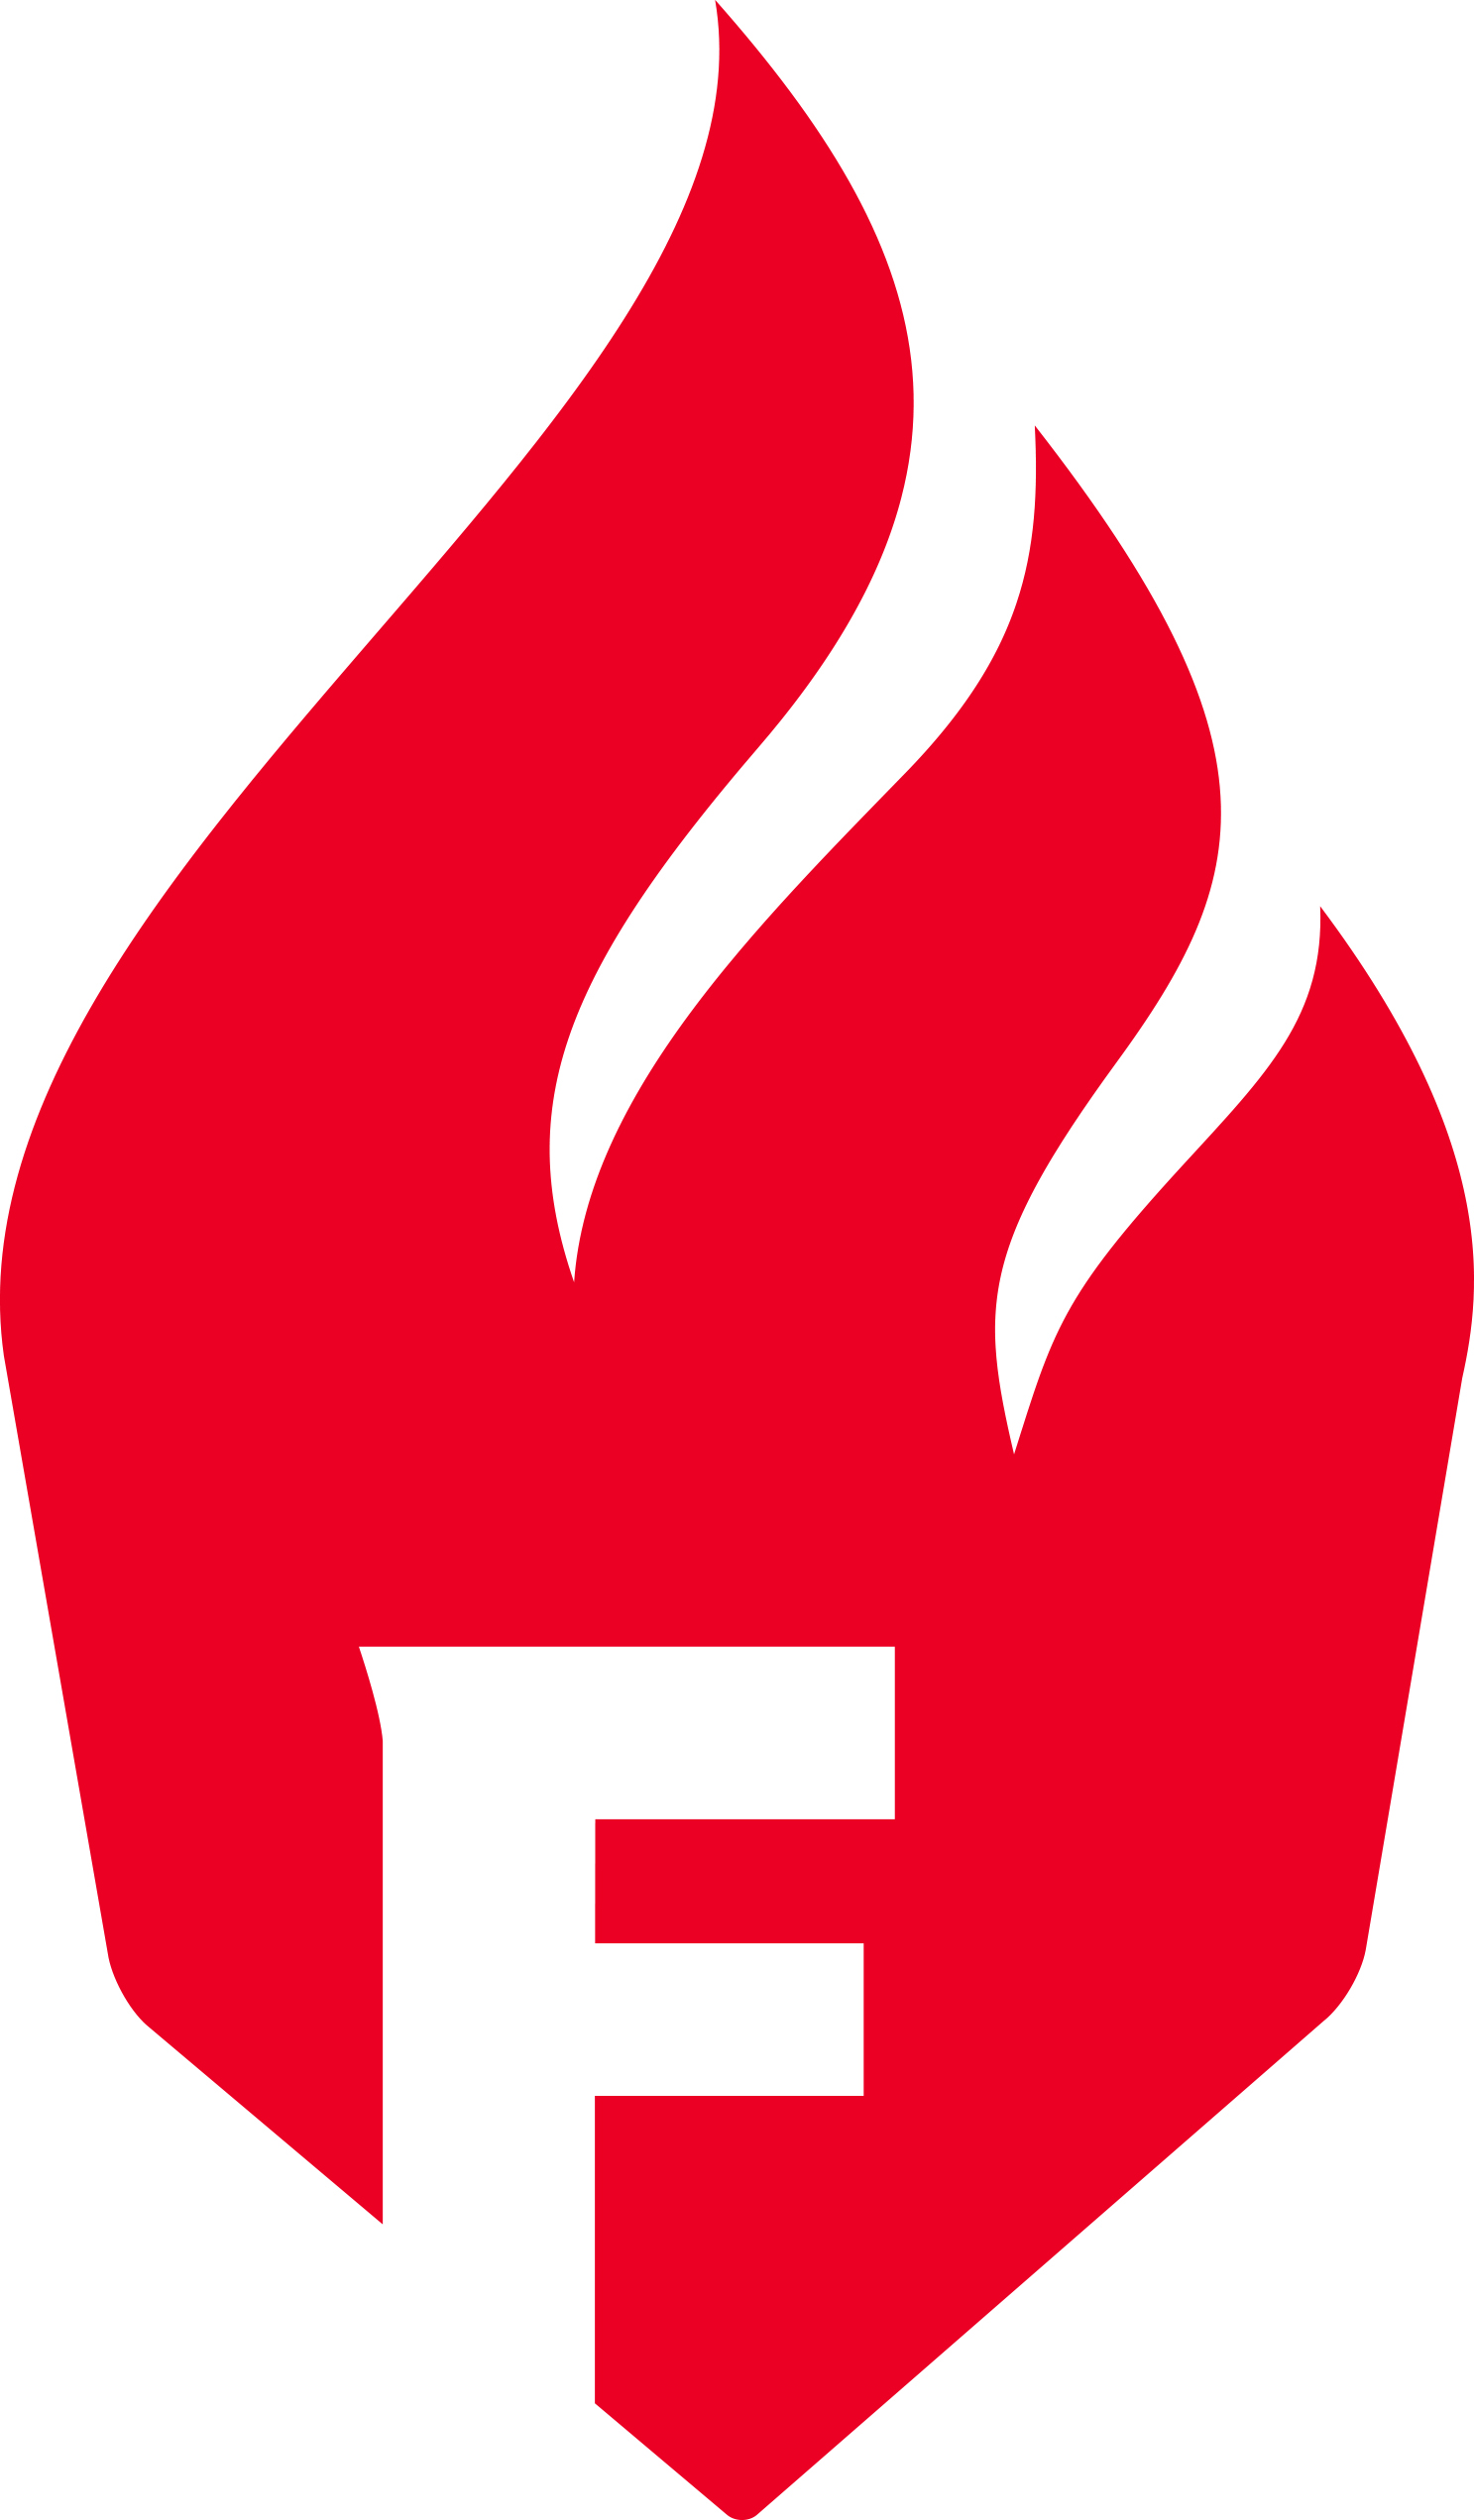 Logo HSG Bensheim/Auerbach